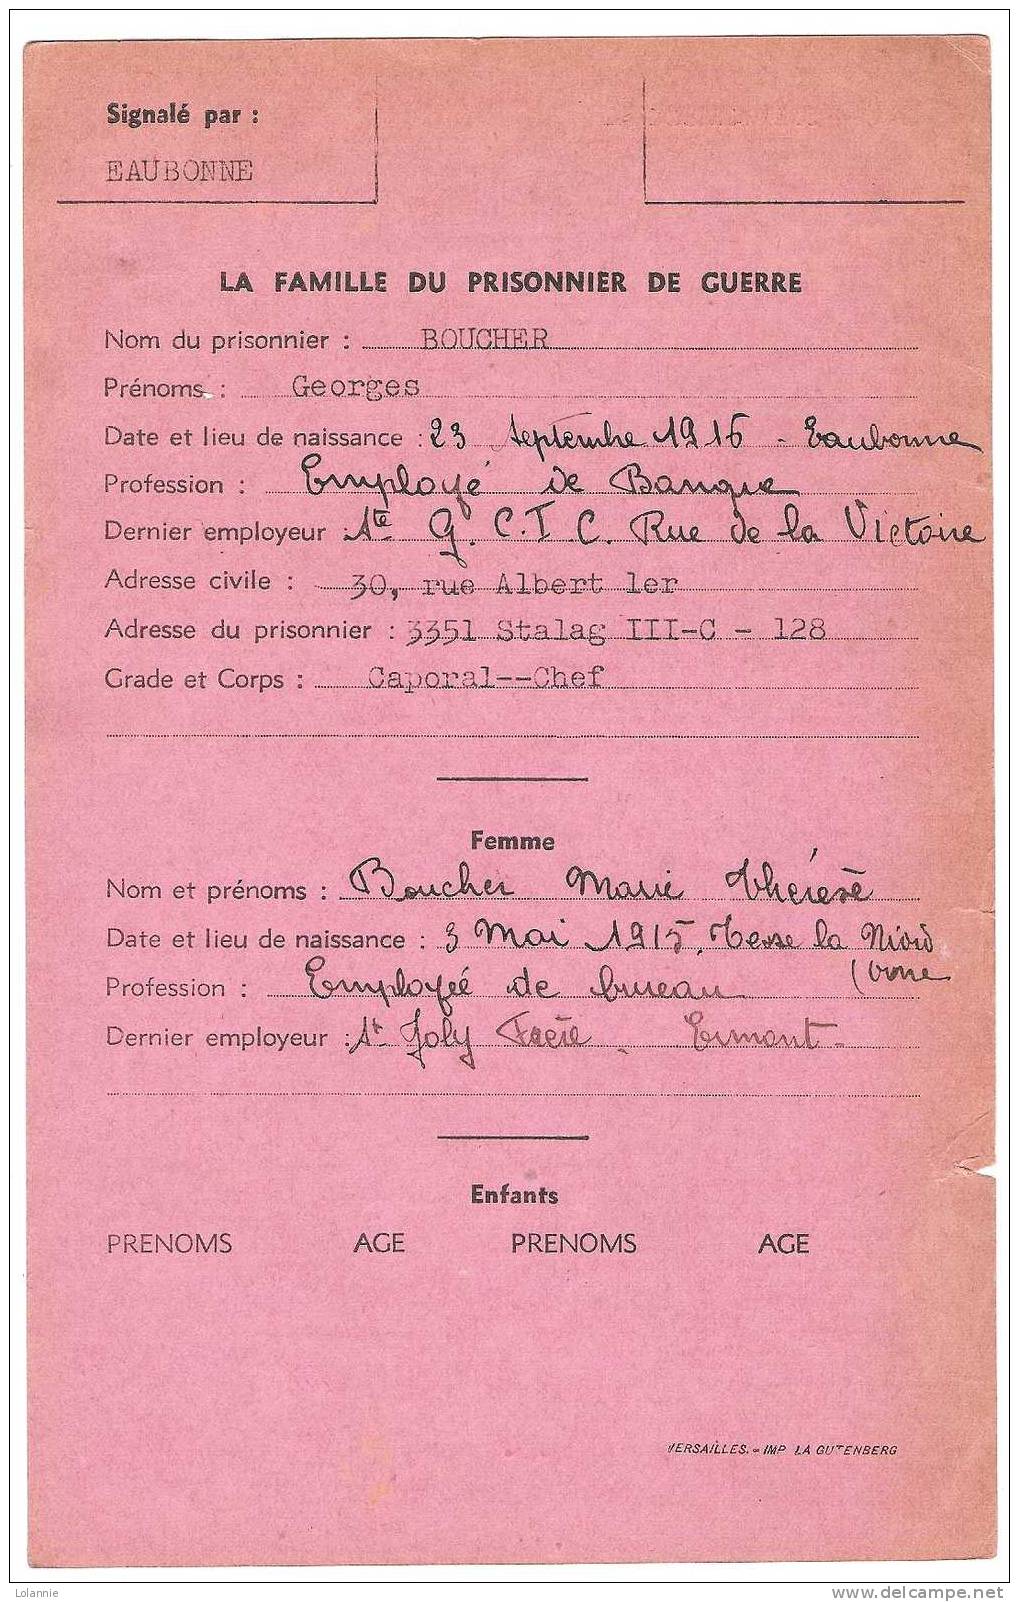 FICHE DE PRISONNIER DE GUERRE à Alt- DREWITZ N° 3351STALAG III-C-128    CAPORAL CHEF RENTRE MAI 1945 - Documents Historiques